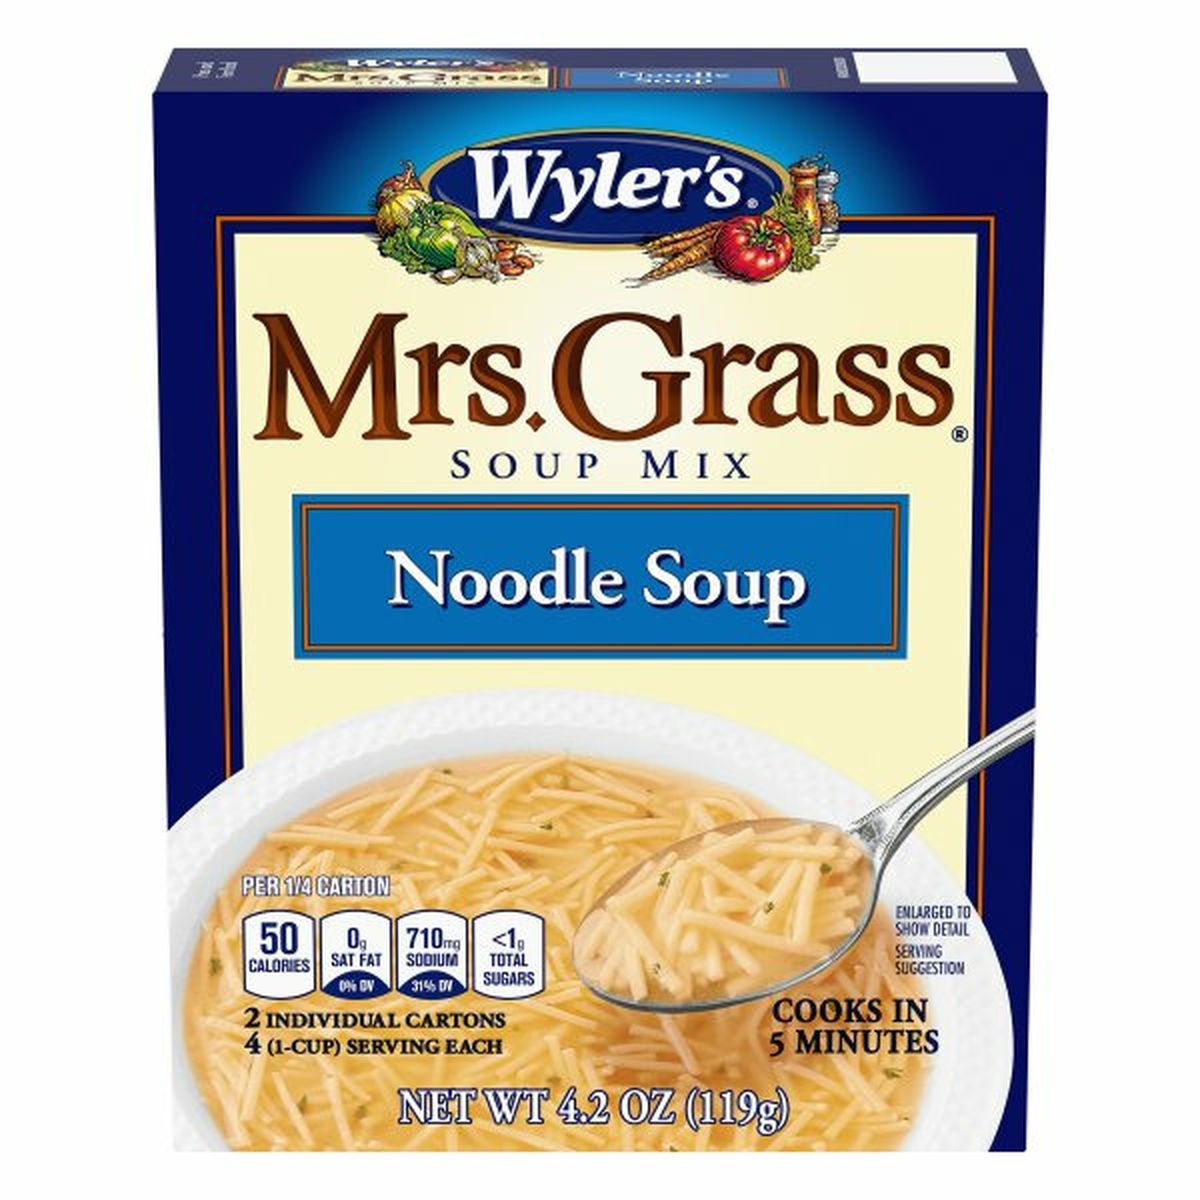 Calories in Mrs. Grass Mrs. Grass Soup Mix, Noodle Soup